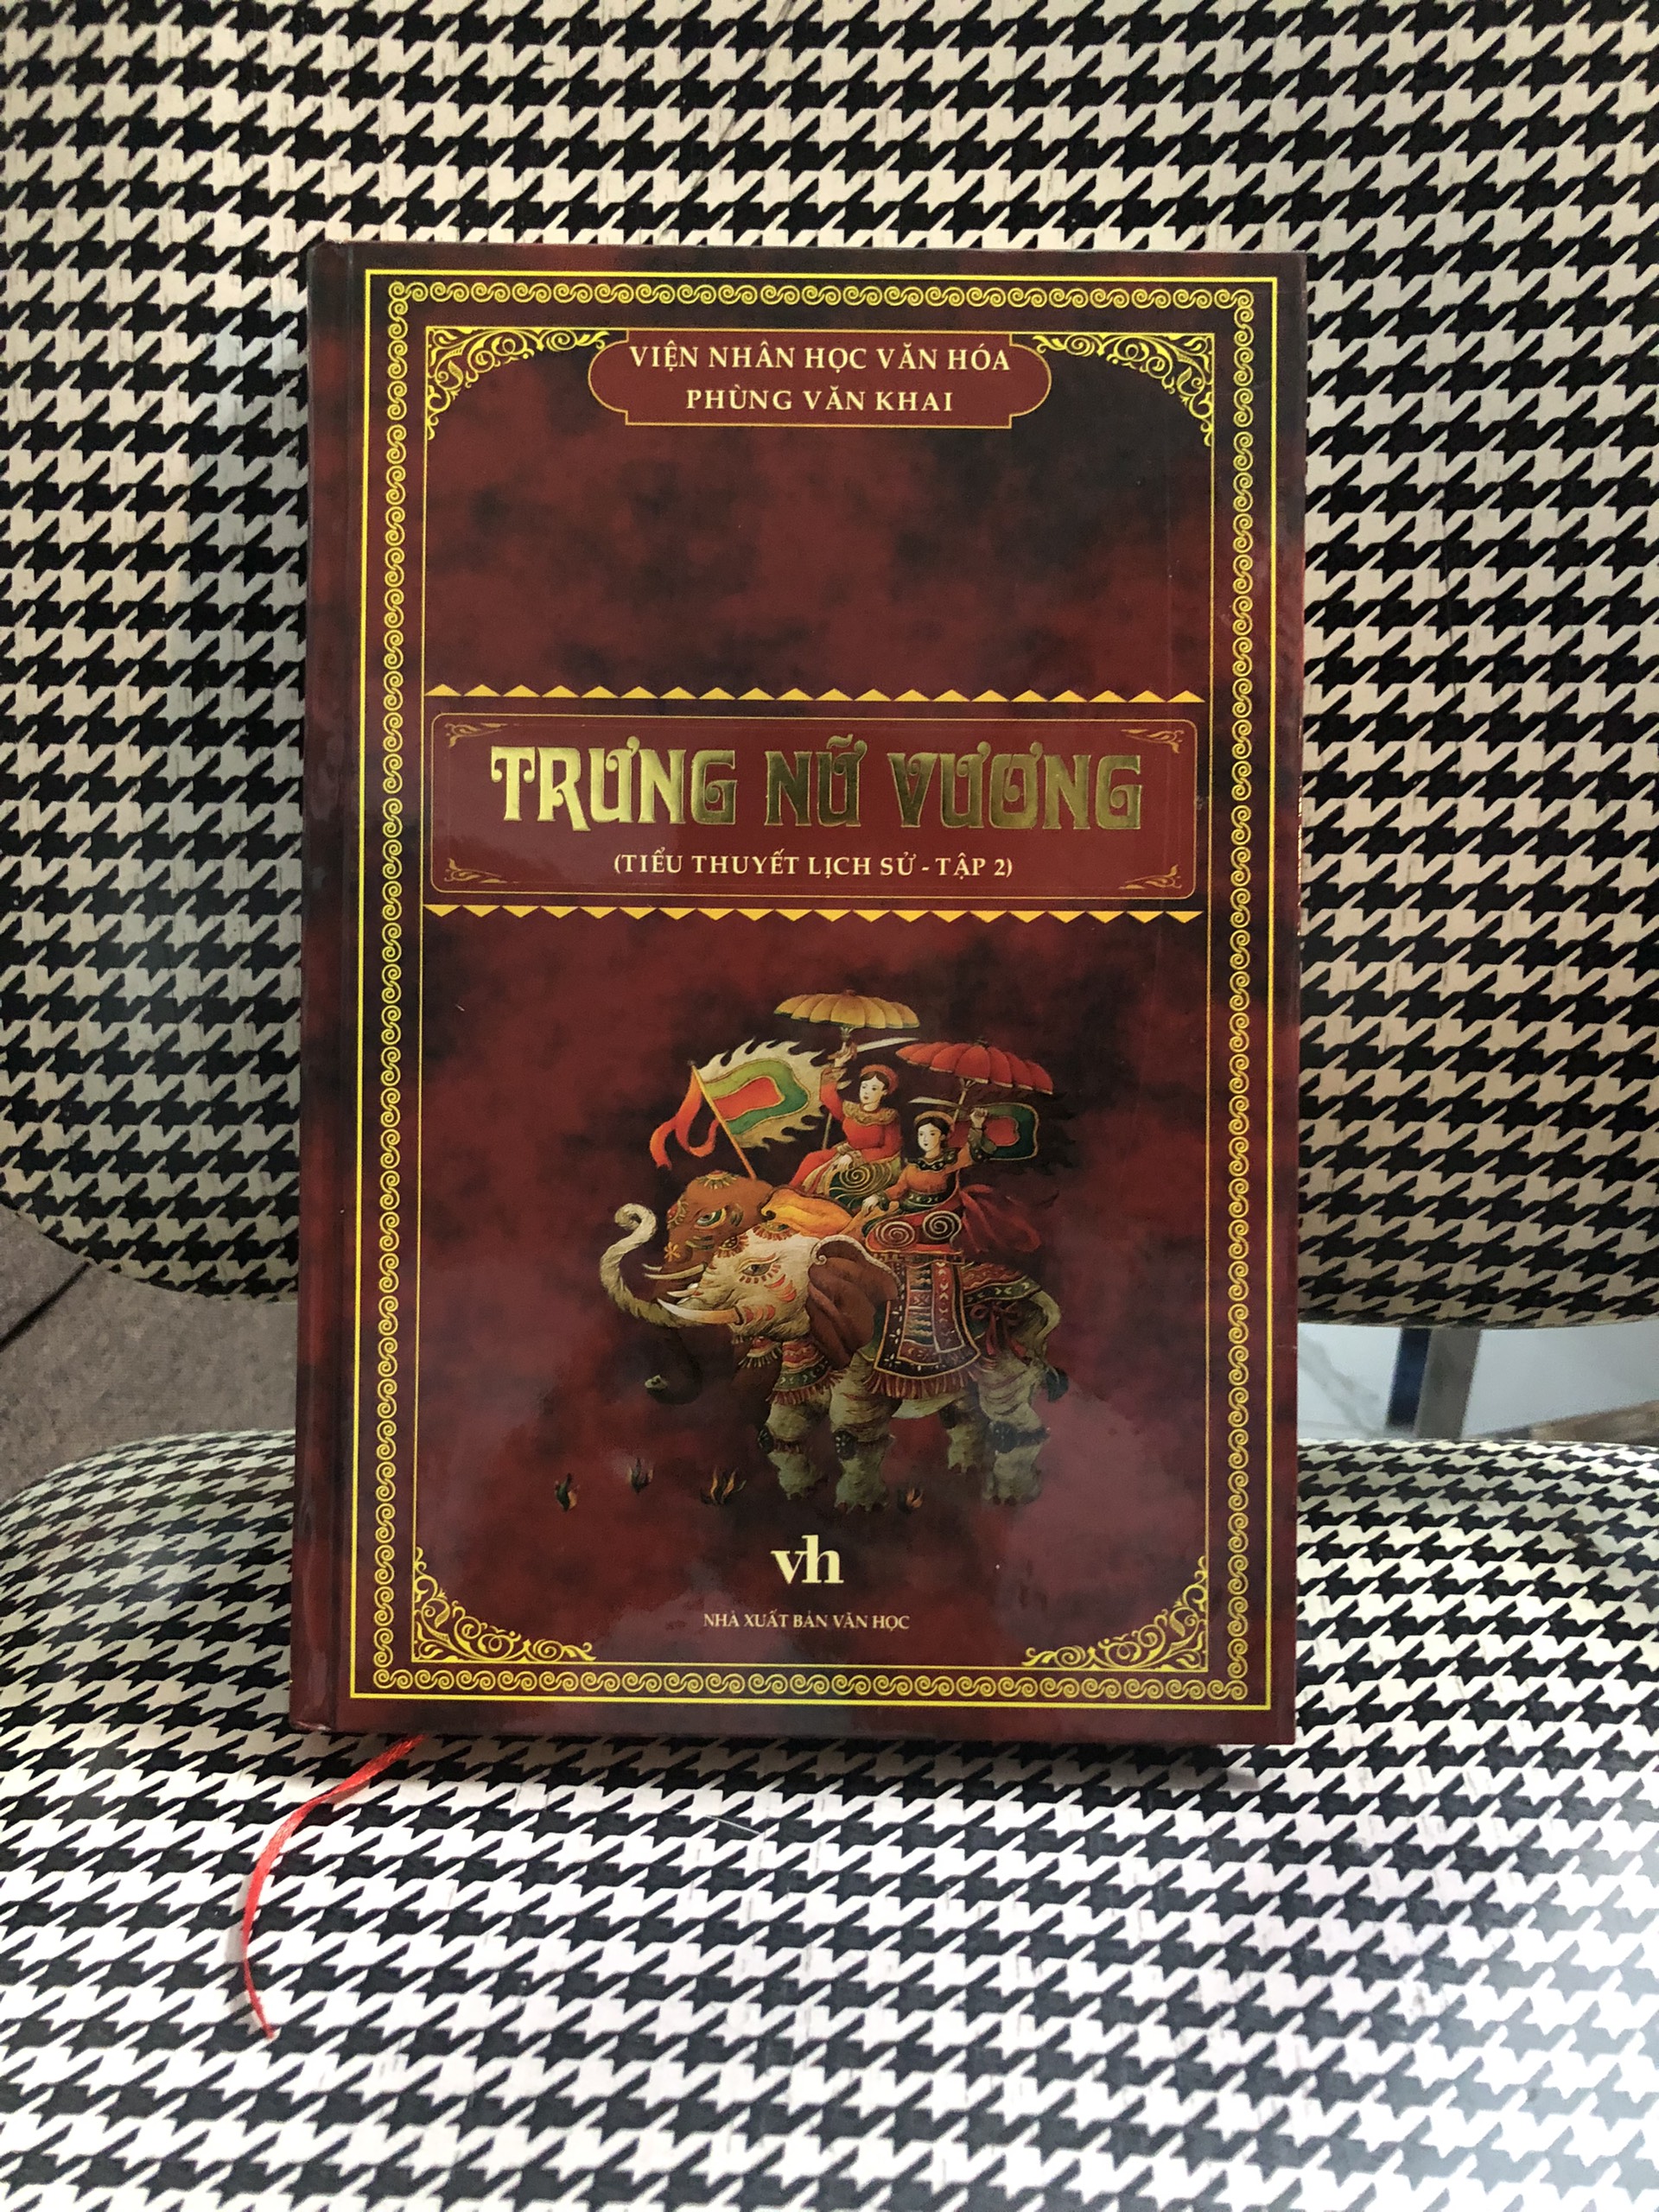 TRƯNG NỮ VƯƠNG tập 2 - Phùng Văn Khai - Sách bìa cứng - tiểu thuyết lịch sử